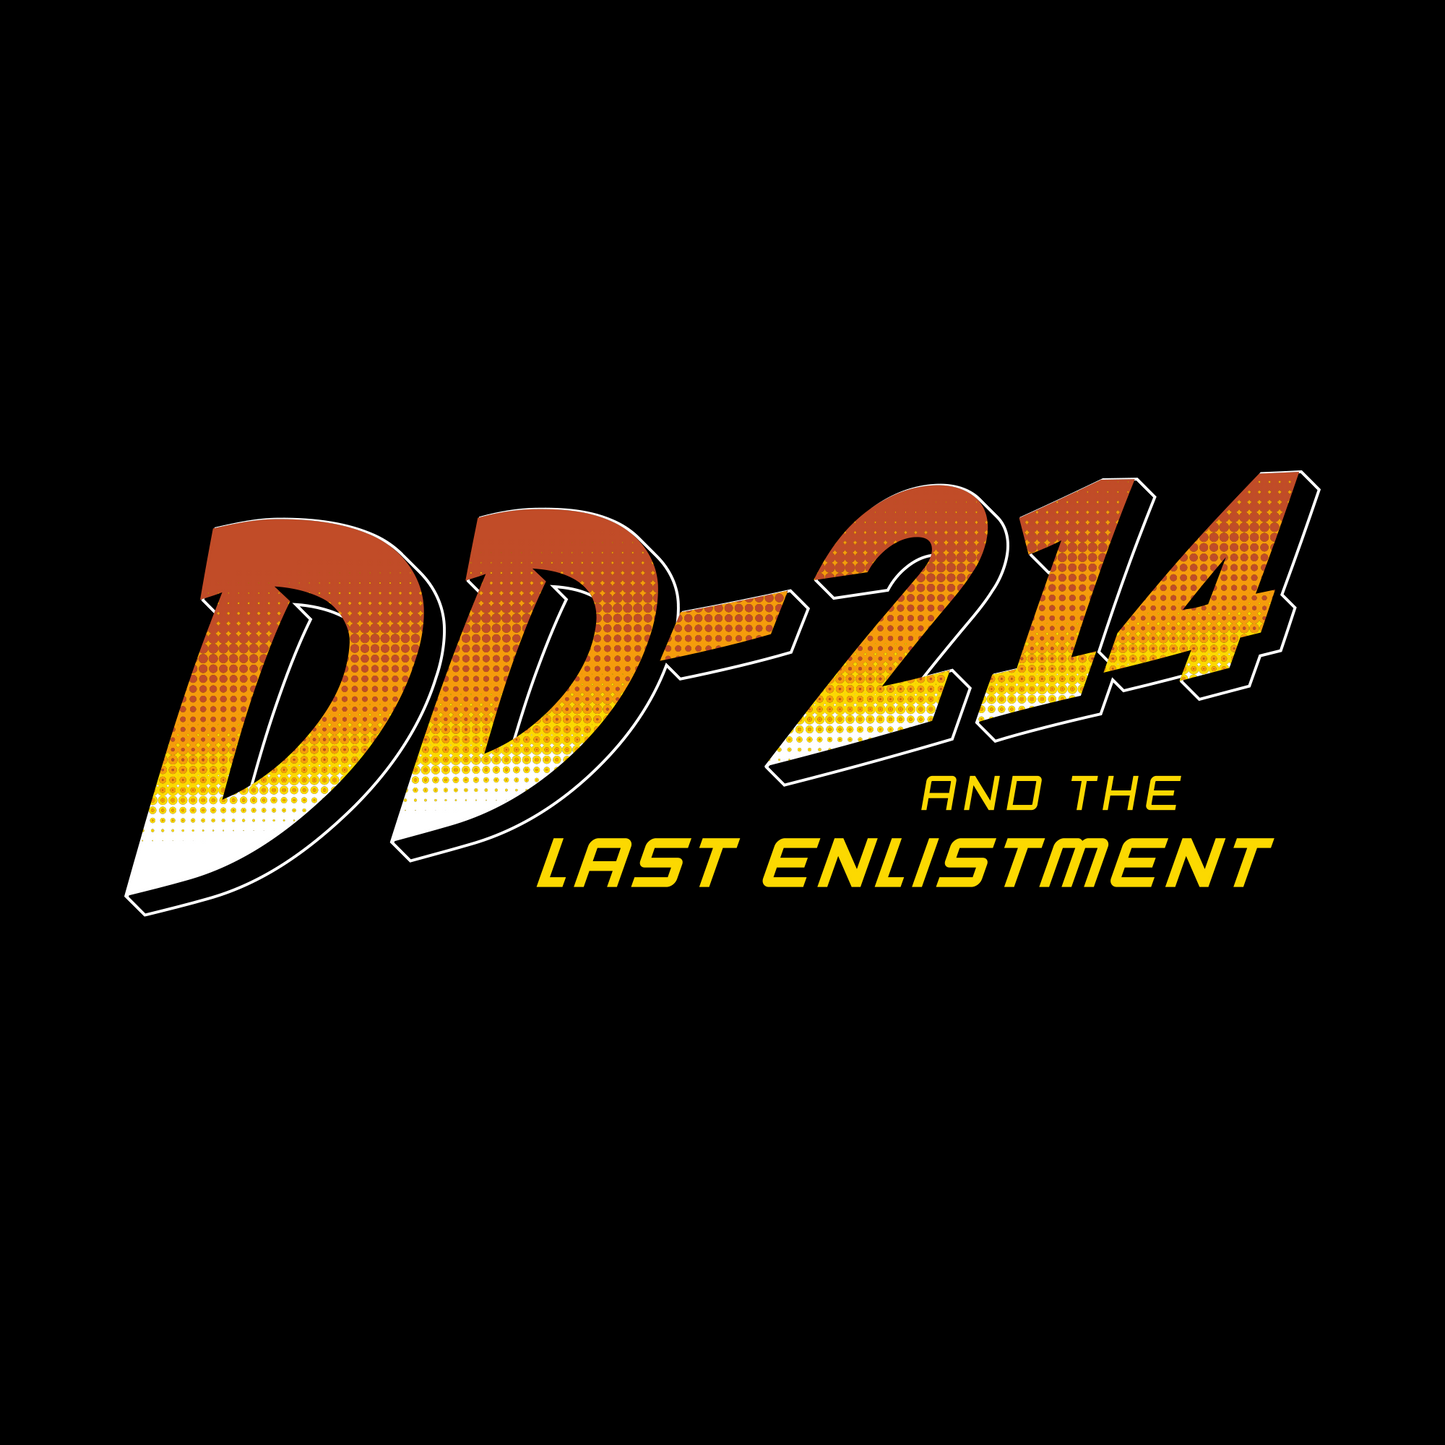 dd214 